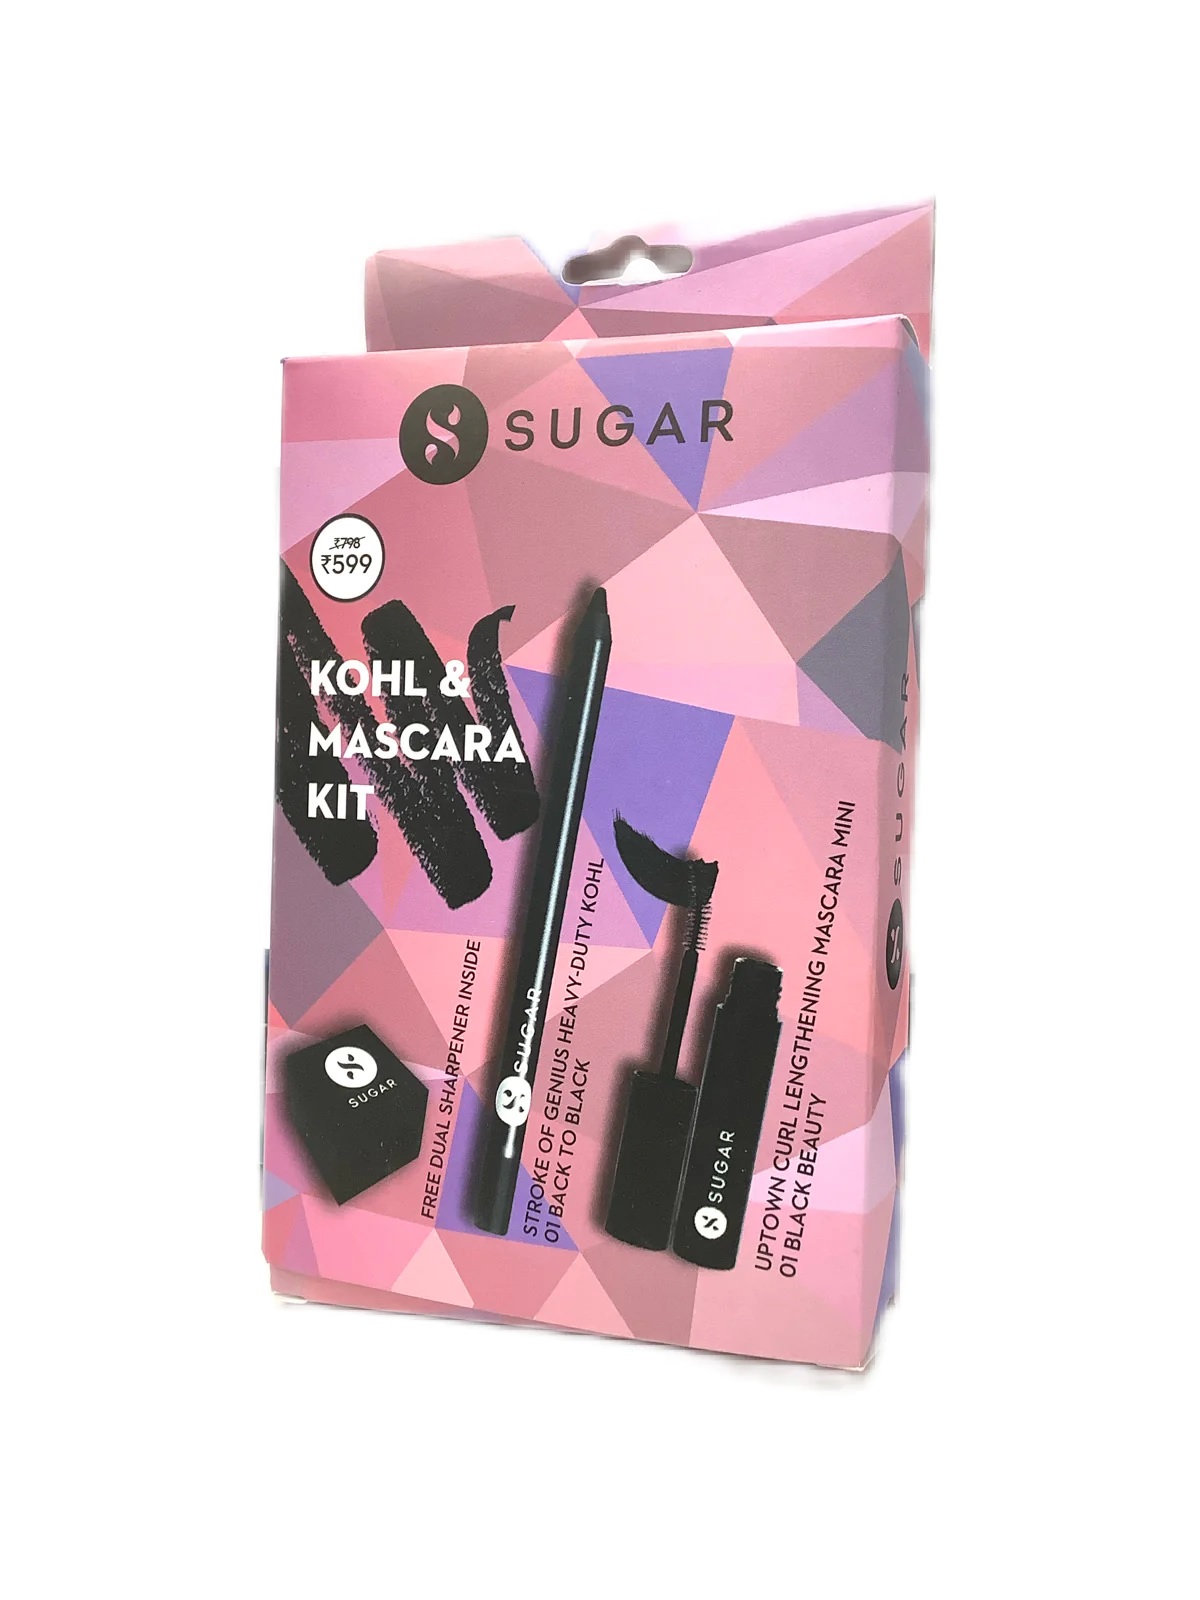 Sugar Kohl & Mascara Kit